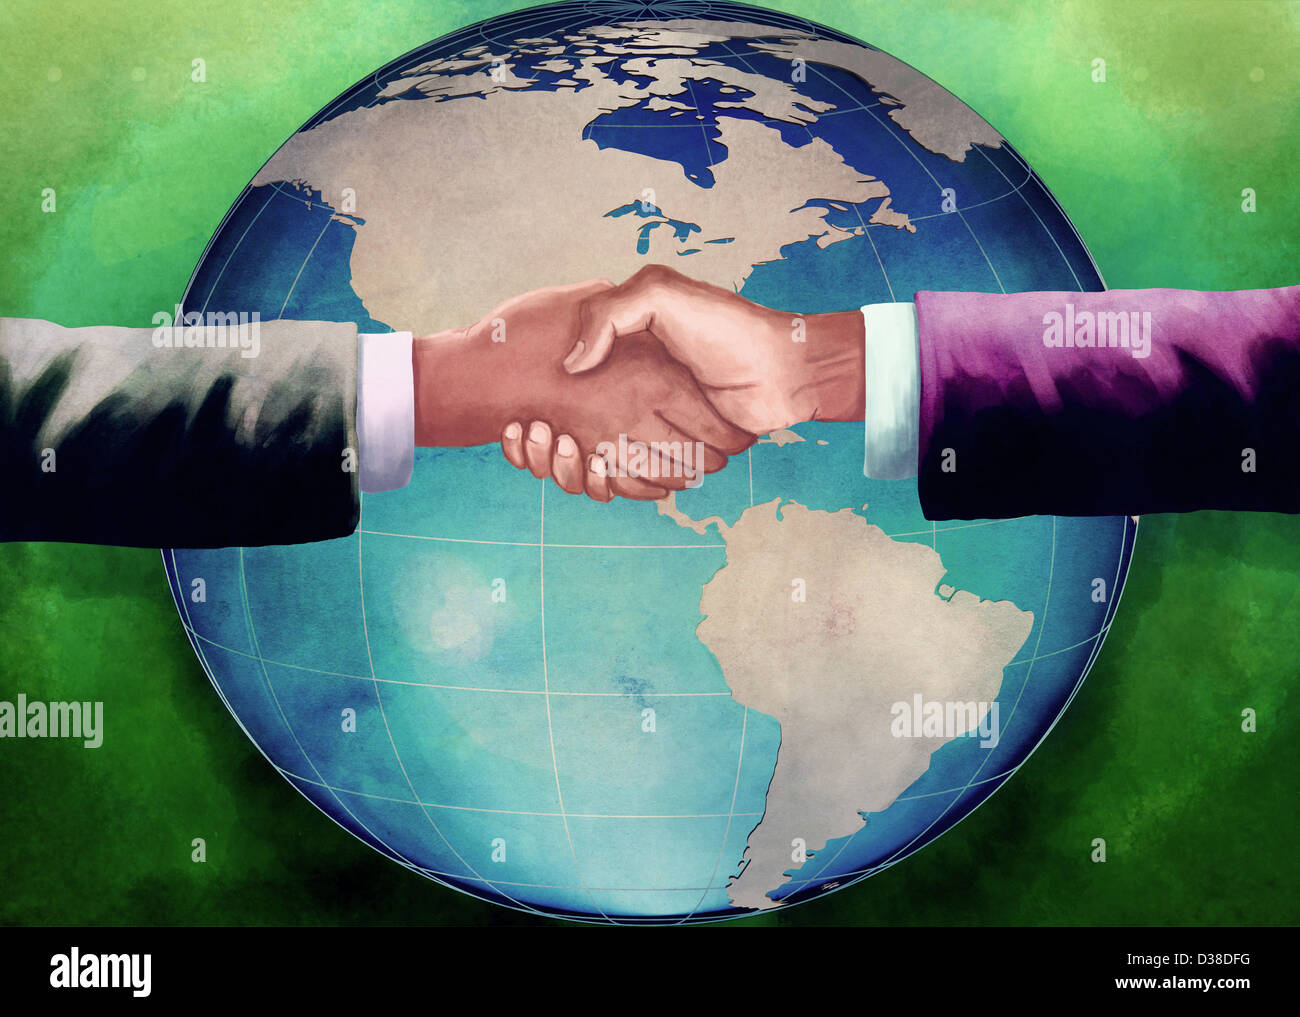 Image d'illustration de businessmen shaking hands with globe dans l'arrière-plan représentant les entreprises d'accord Banque D'Images